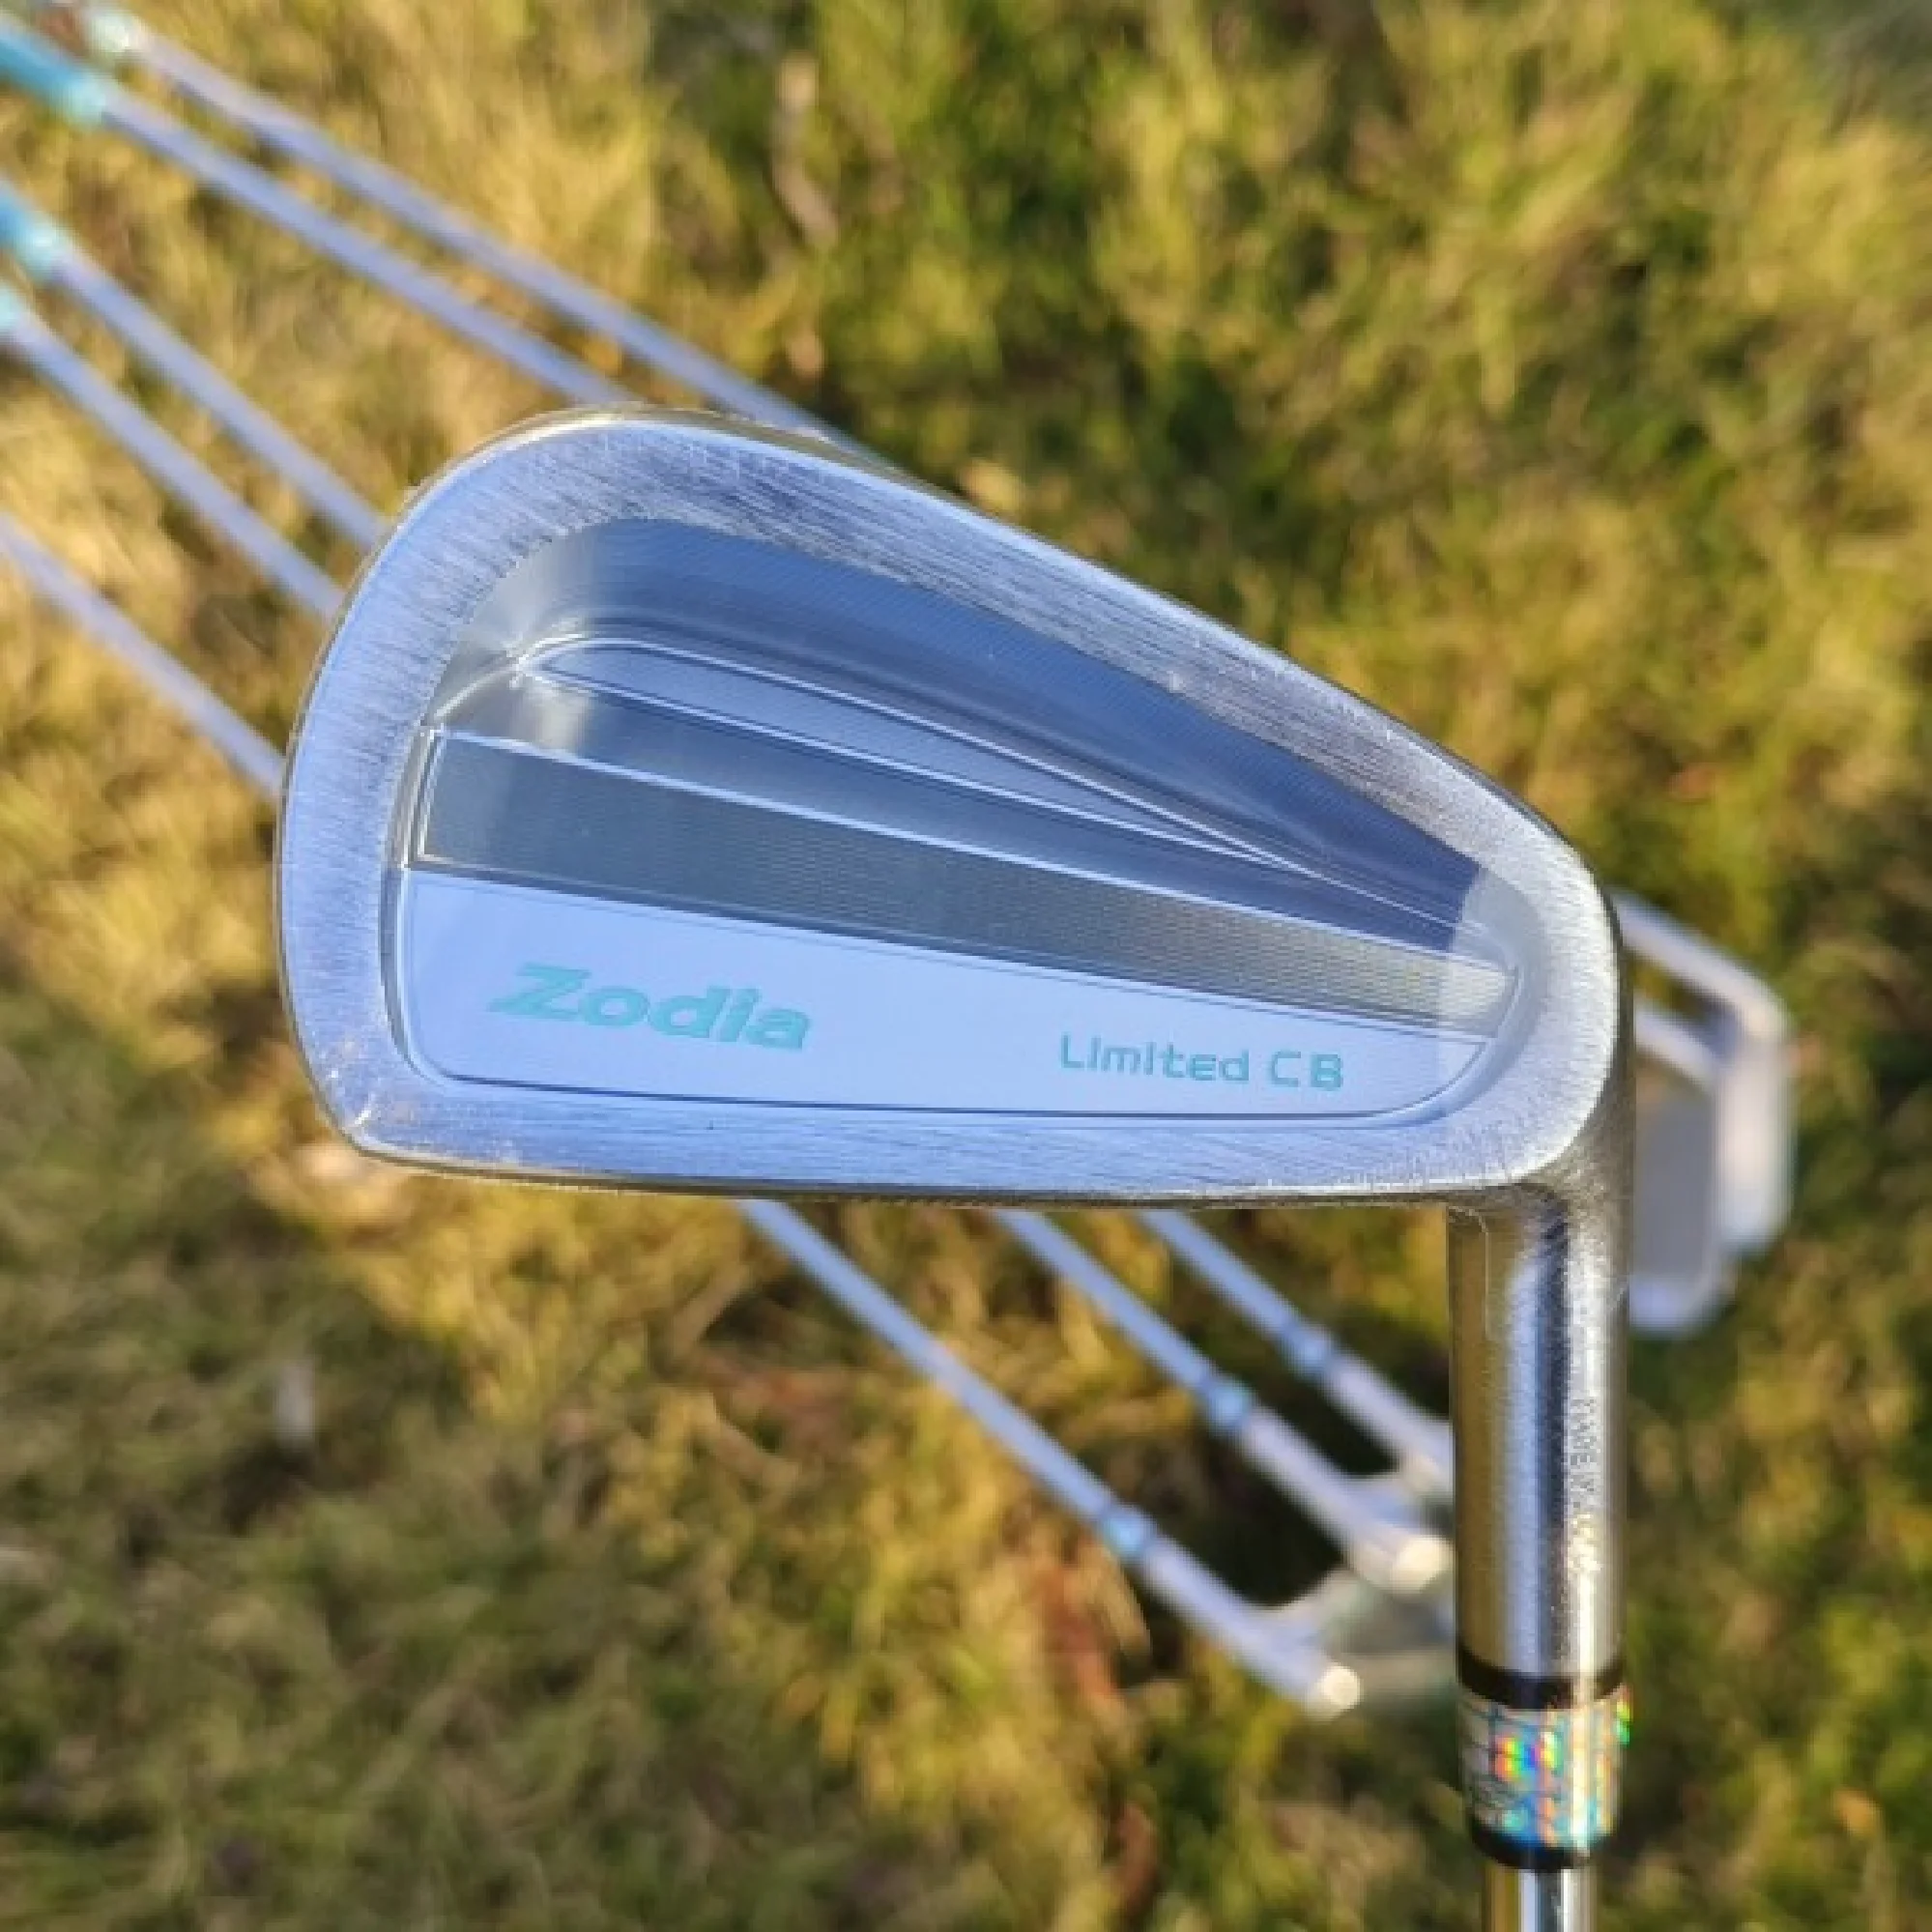 

Новые клюшки для гольфа Zodia Proto Limited CB (5 6 7 8 9 P) 6 шт.